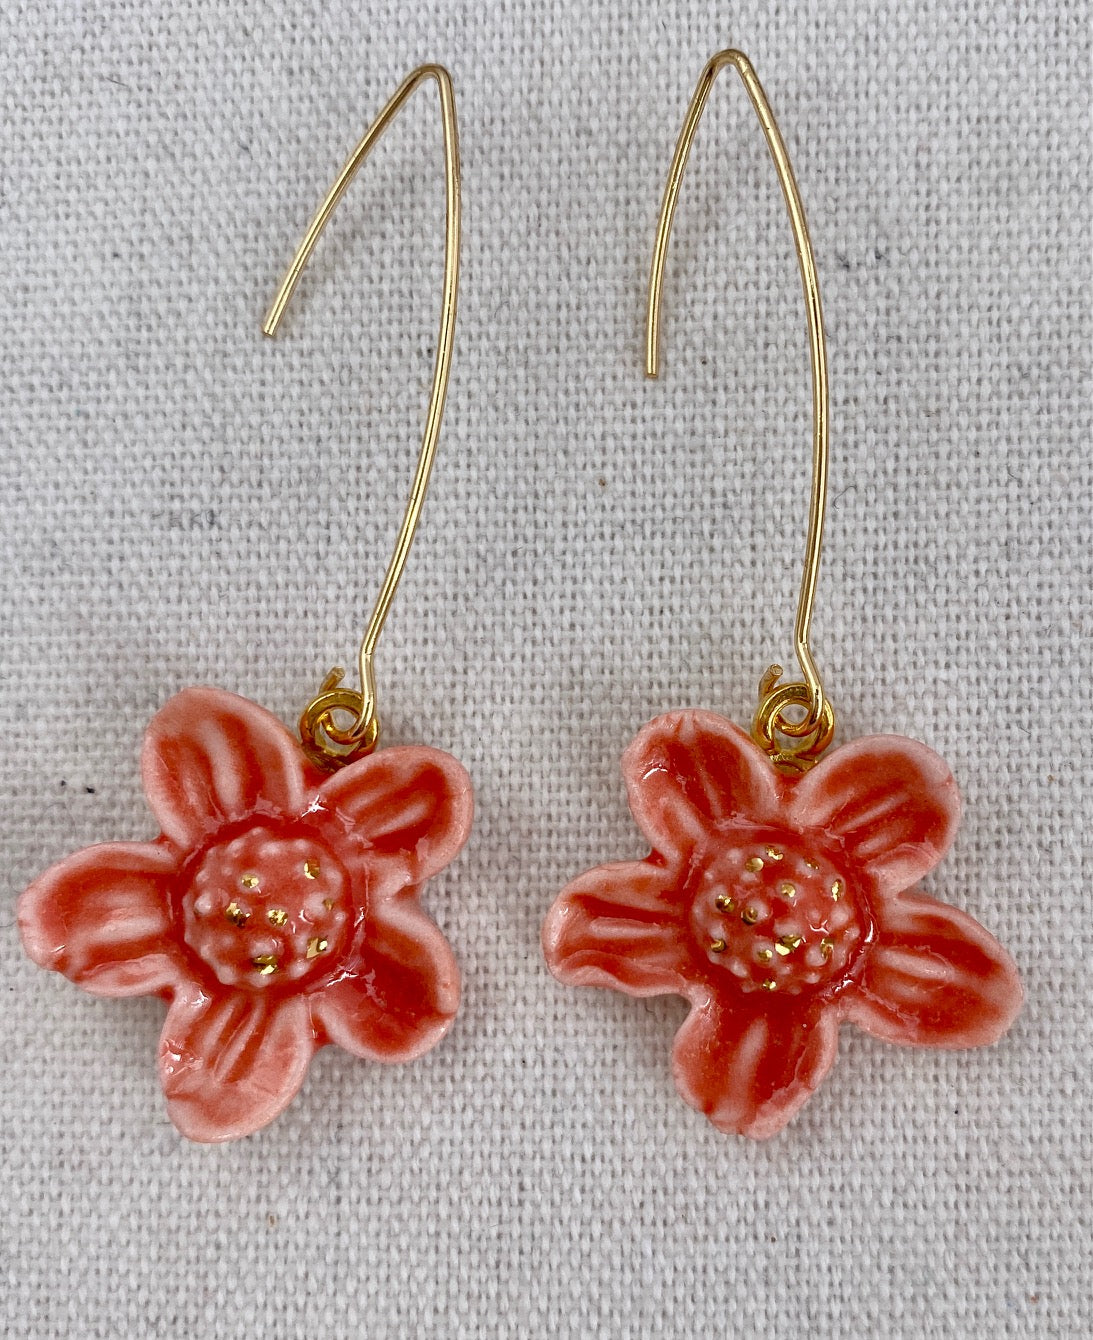 Cherry Blossom Porcelain hanging earrings.